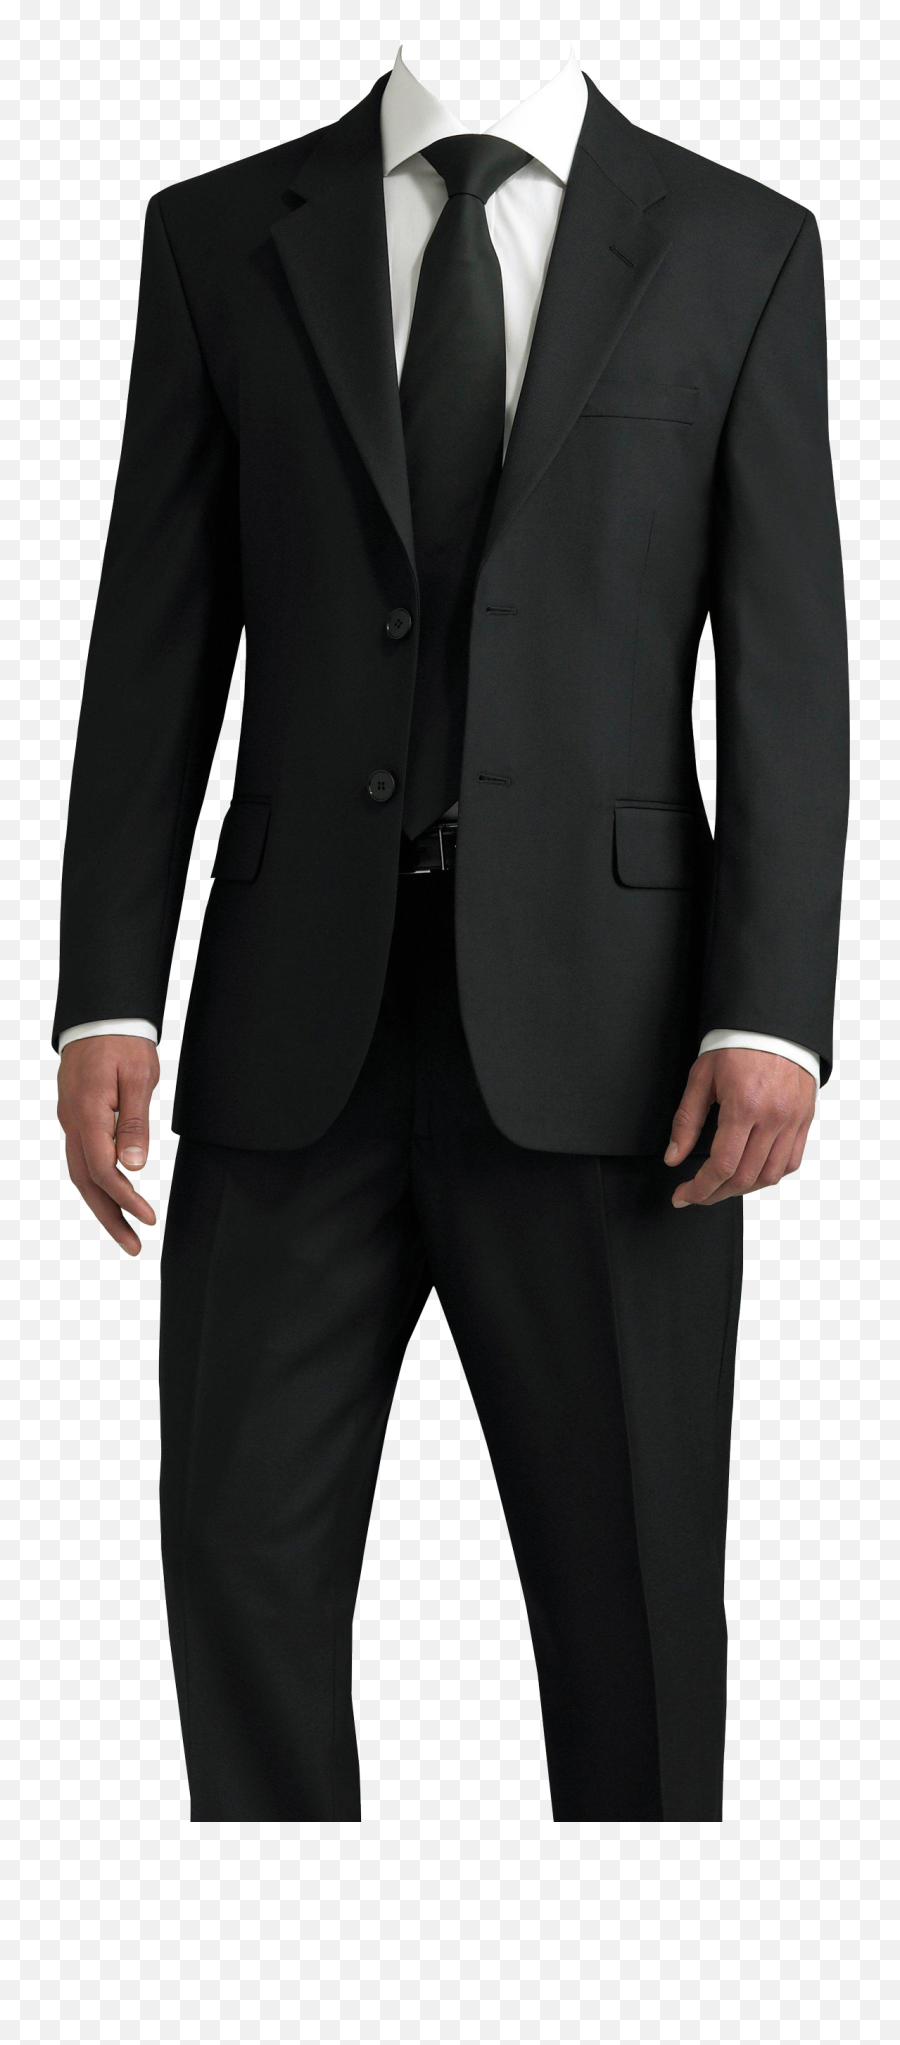 Suit Background Transparent Png - Suit Png For Photoshop,Suit ...